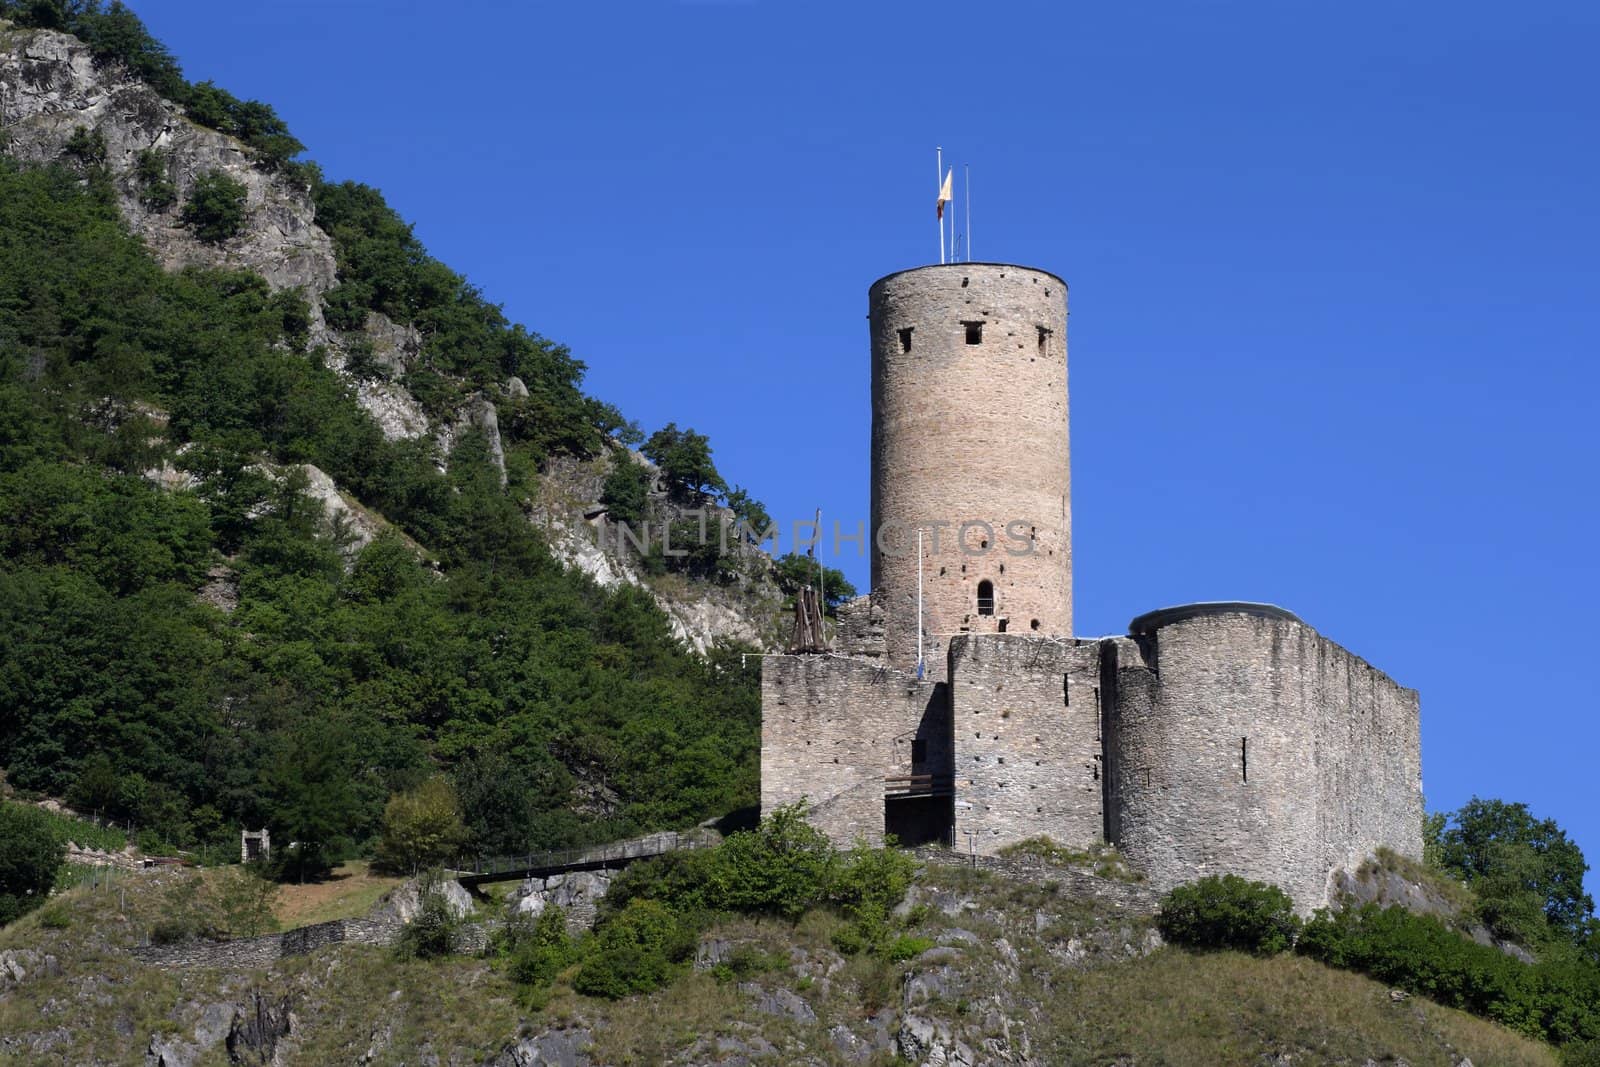 Chateau de la Batiaz in Switzerland by sumners